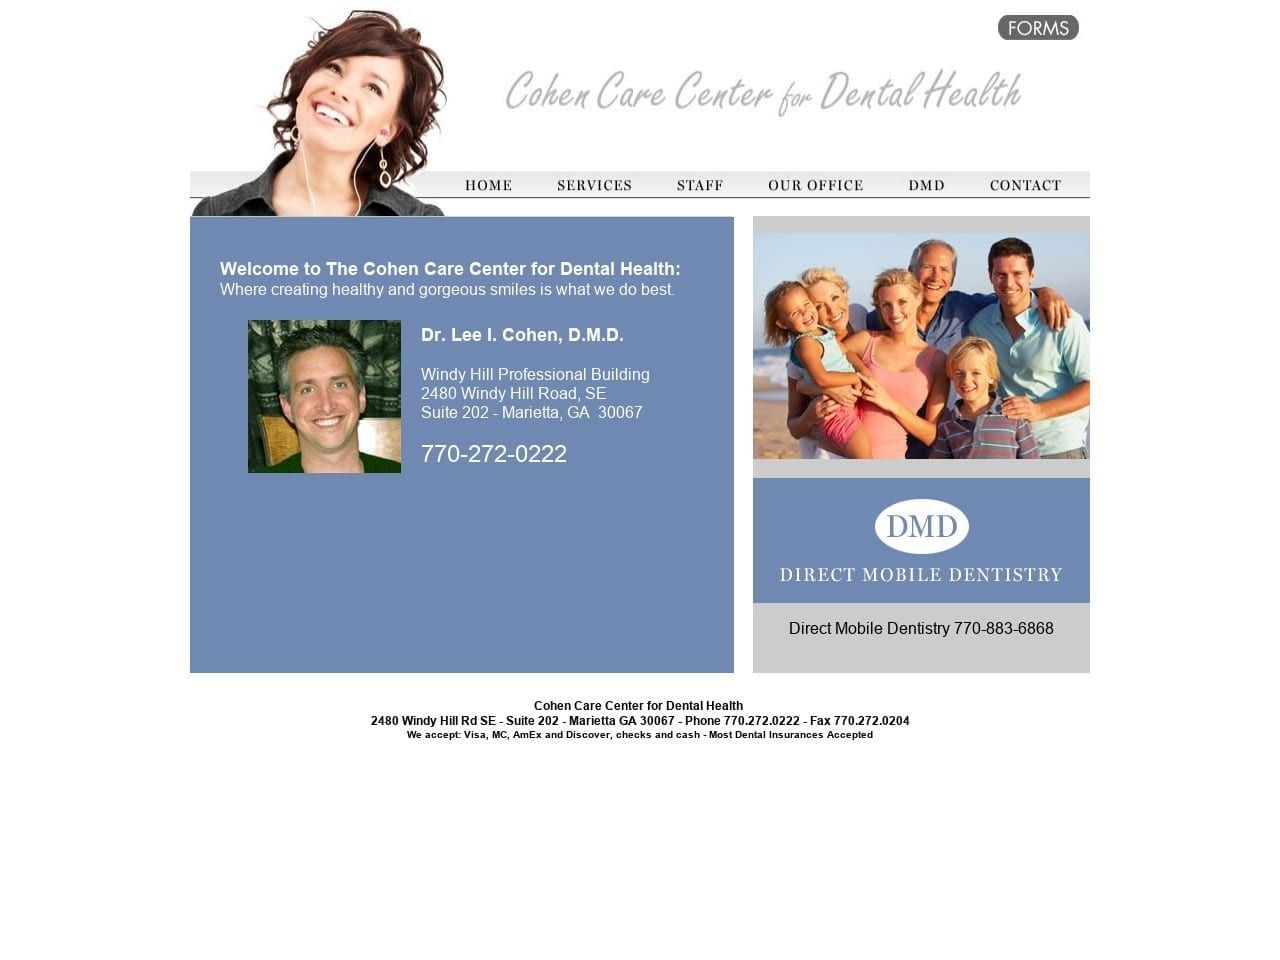 Cohen Care Center for Dental Health Website Screenshot from cohencare.com